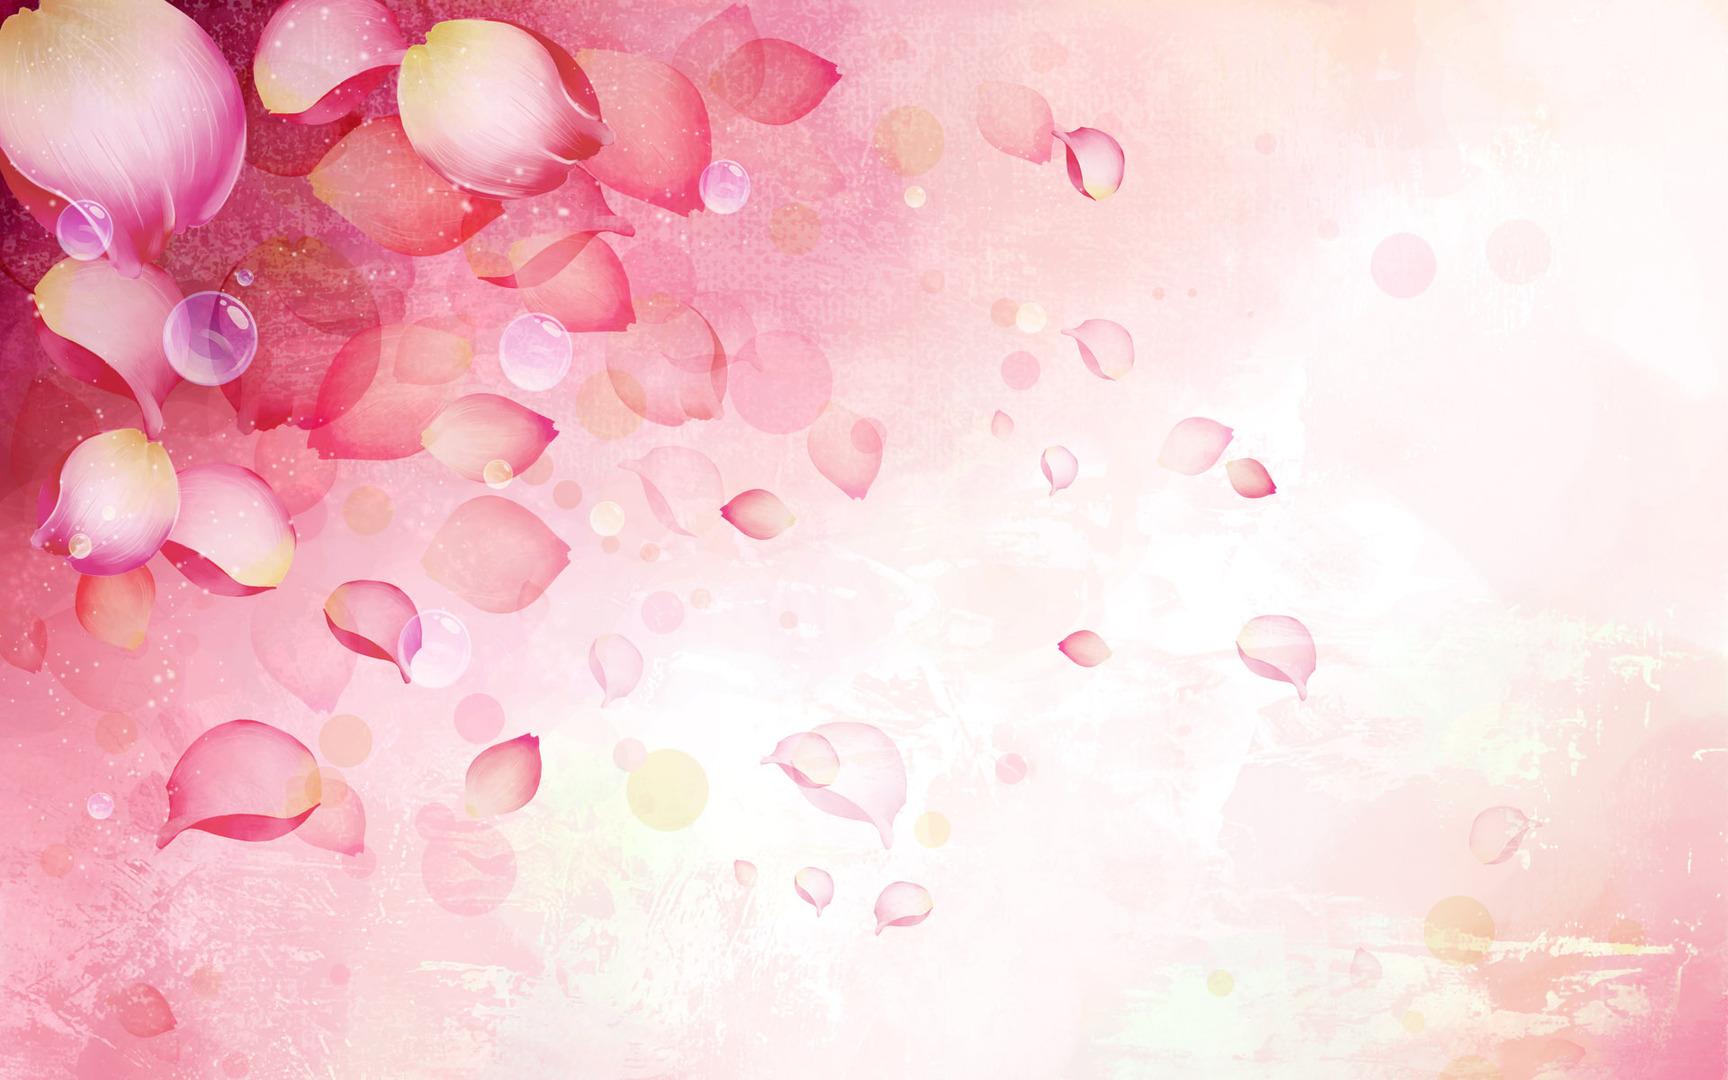 Rose Petals Wallpaper, Creative Rose Petals Wallpaper - #WP:GDL77